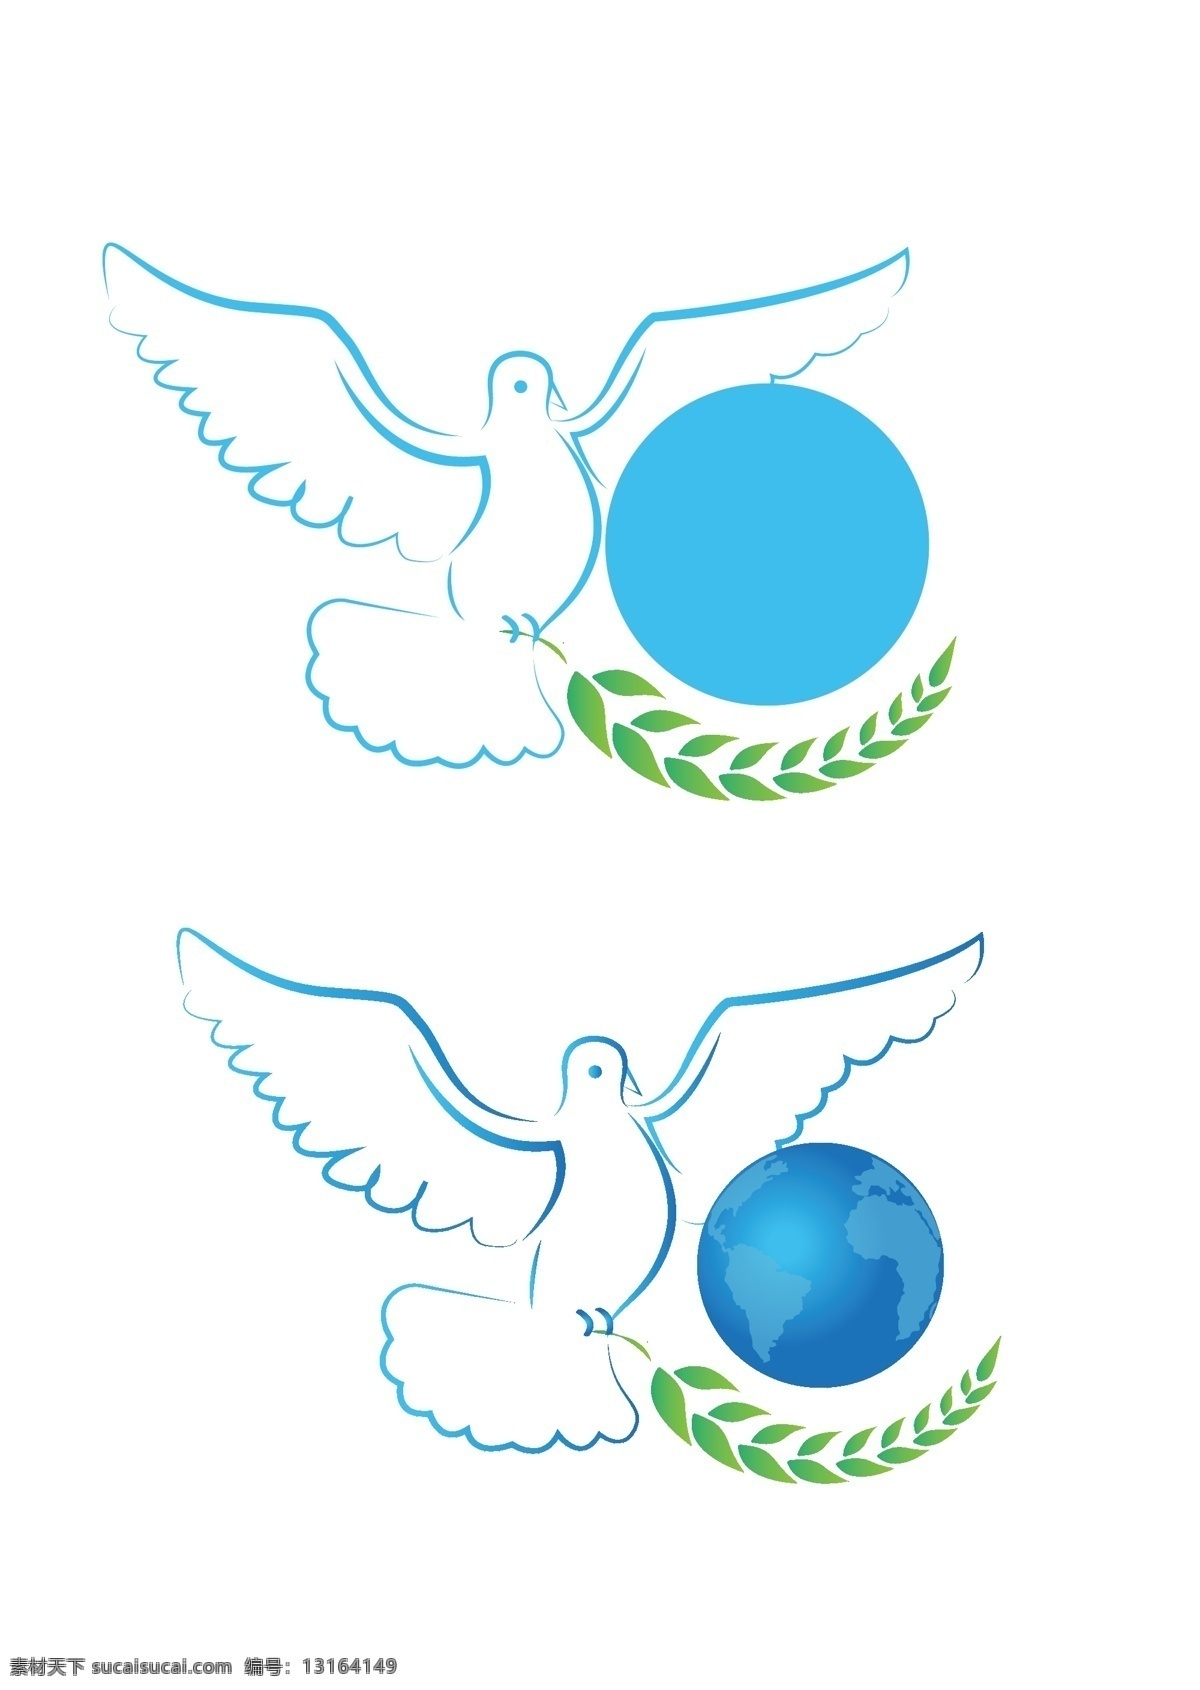 鸽子 地球 橄榄枝 图案 蓝色 绿色 和平 logo 简约